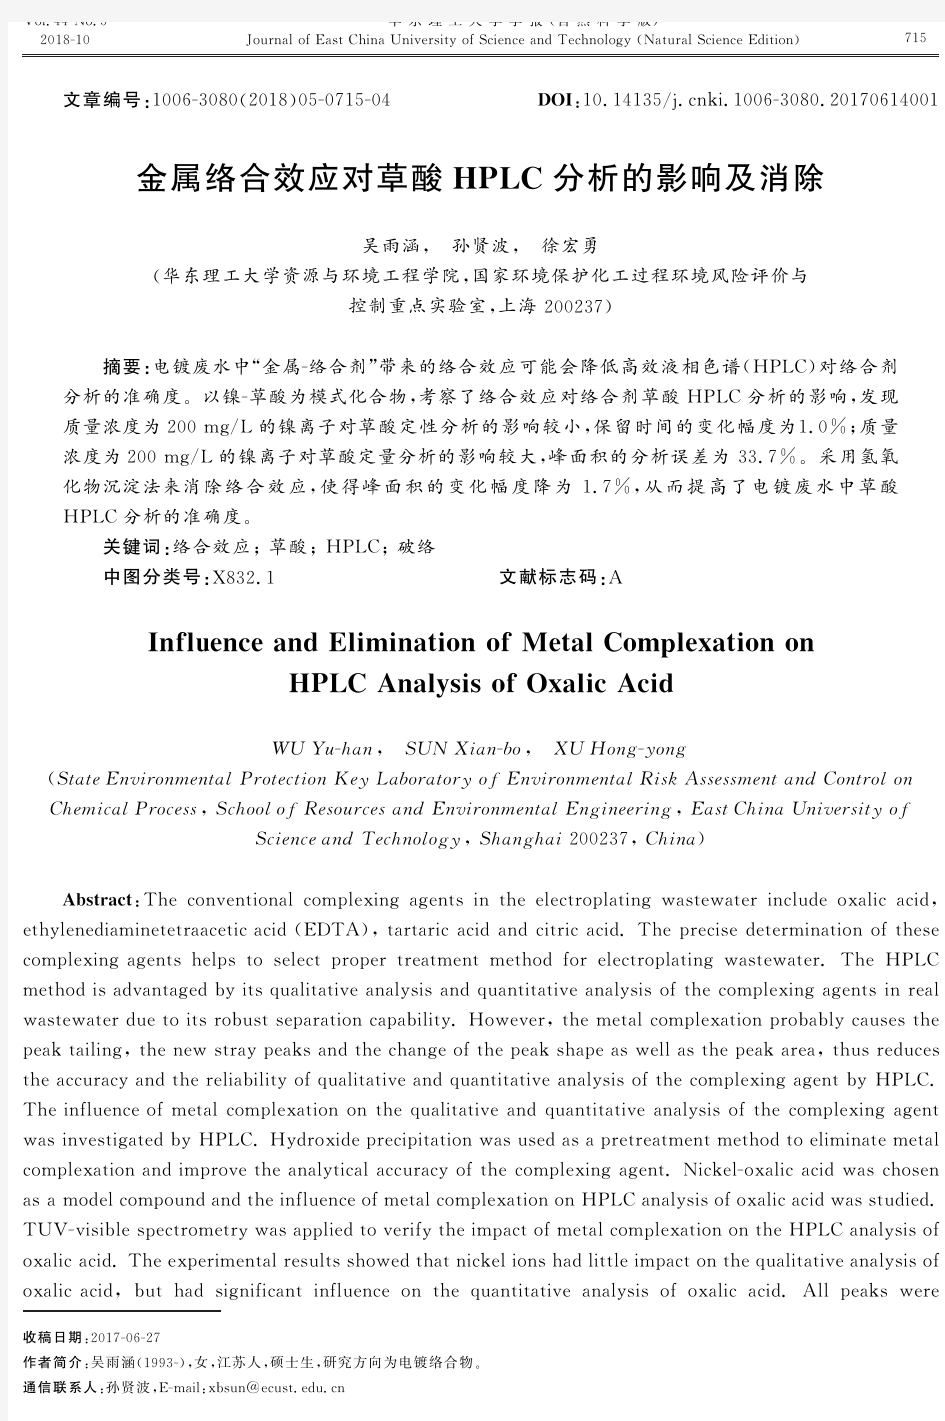 金属络合效应对草酸HPLC分析的影响及消除